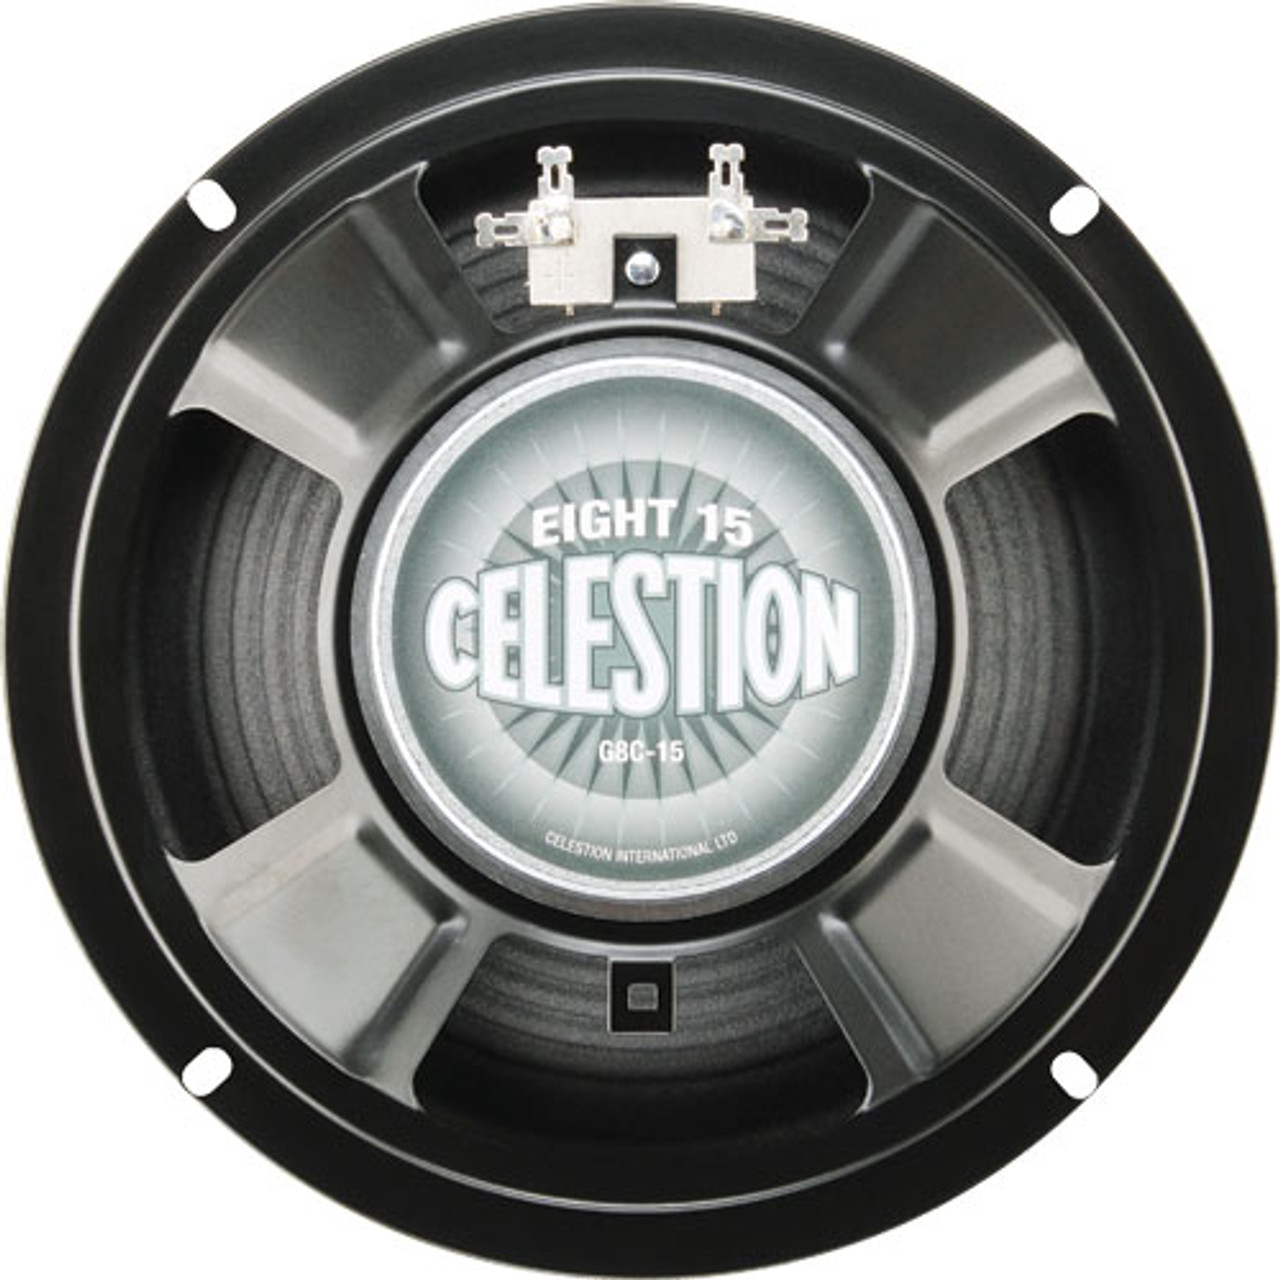 Celestion Eight 15 - 15W 4ohm